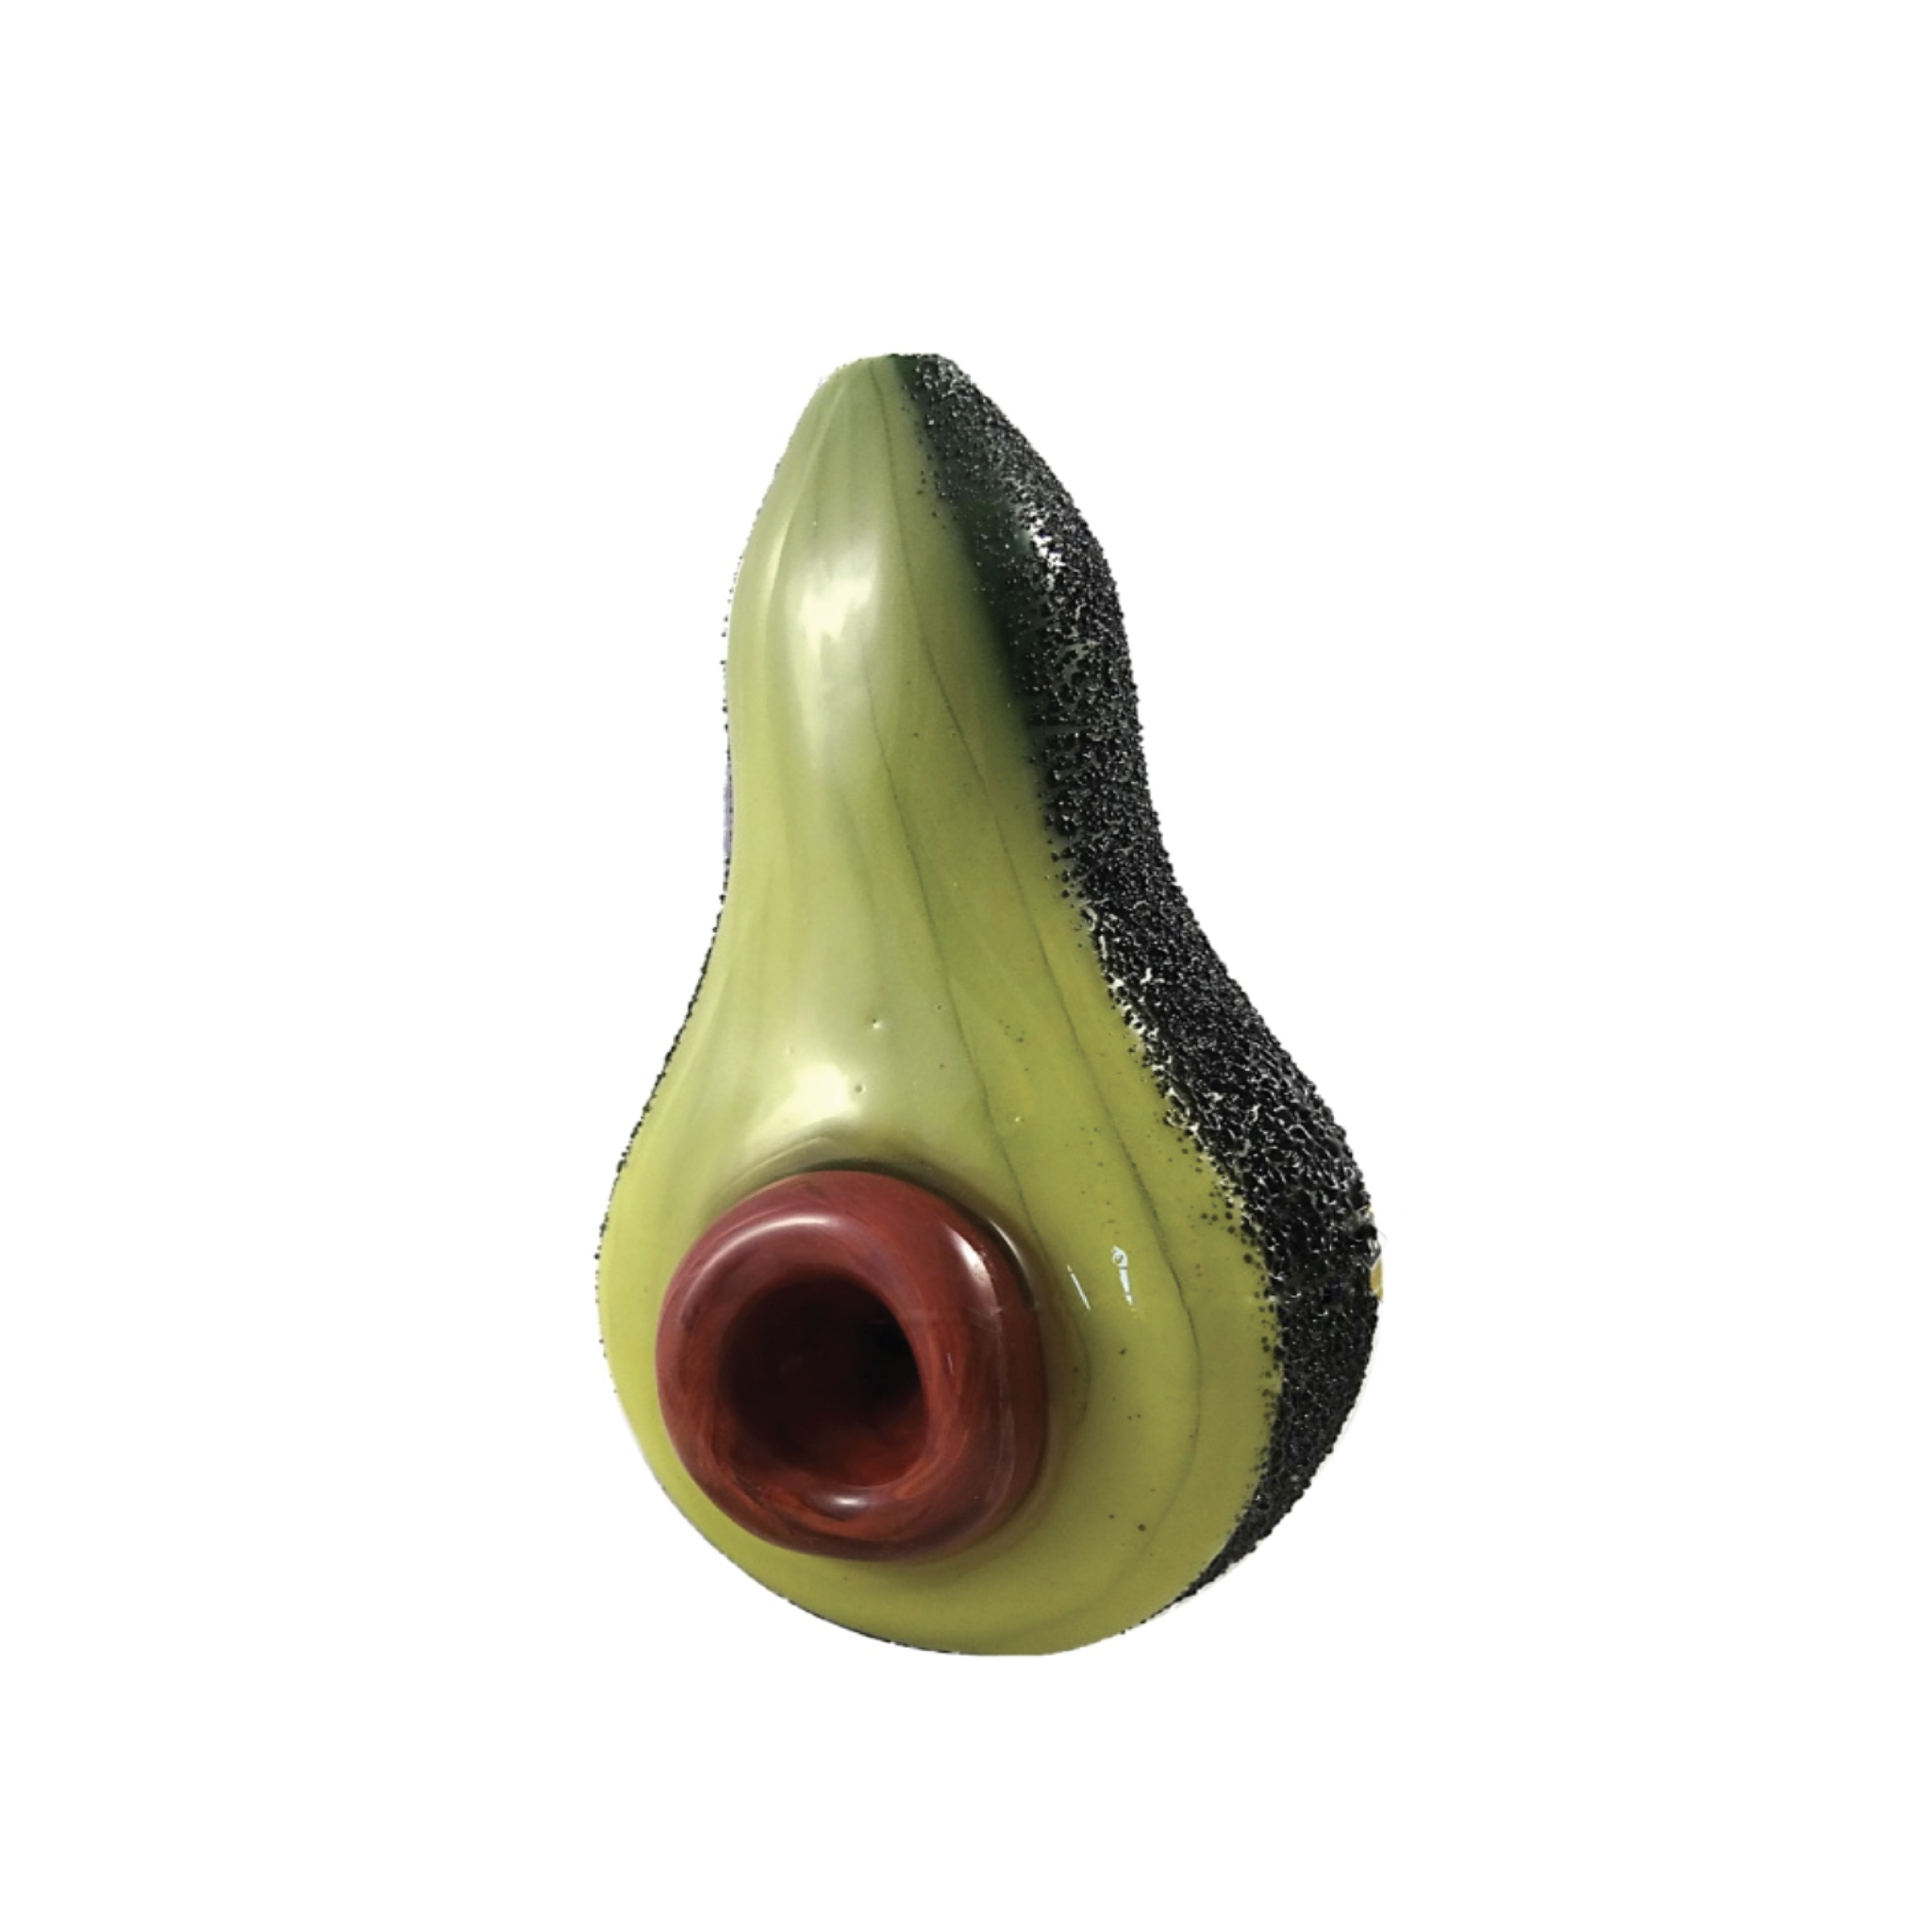 Avocado Hand Pipe